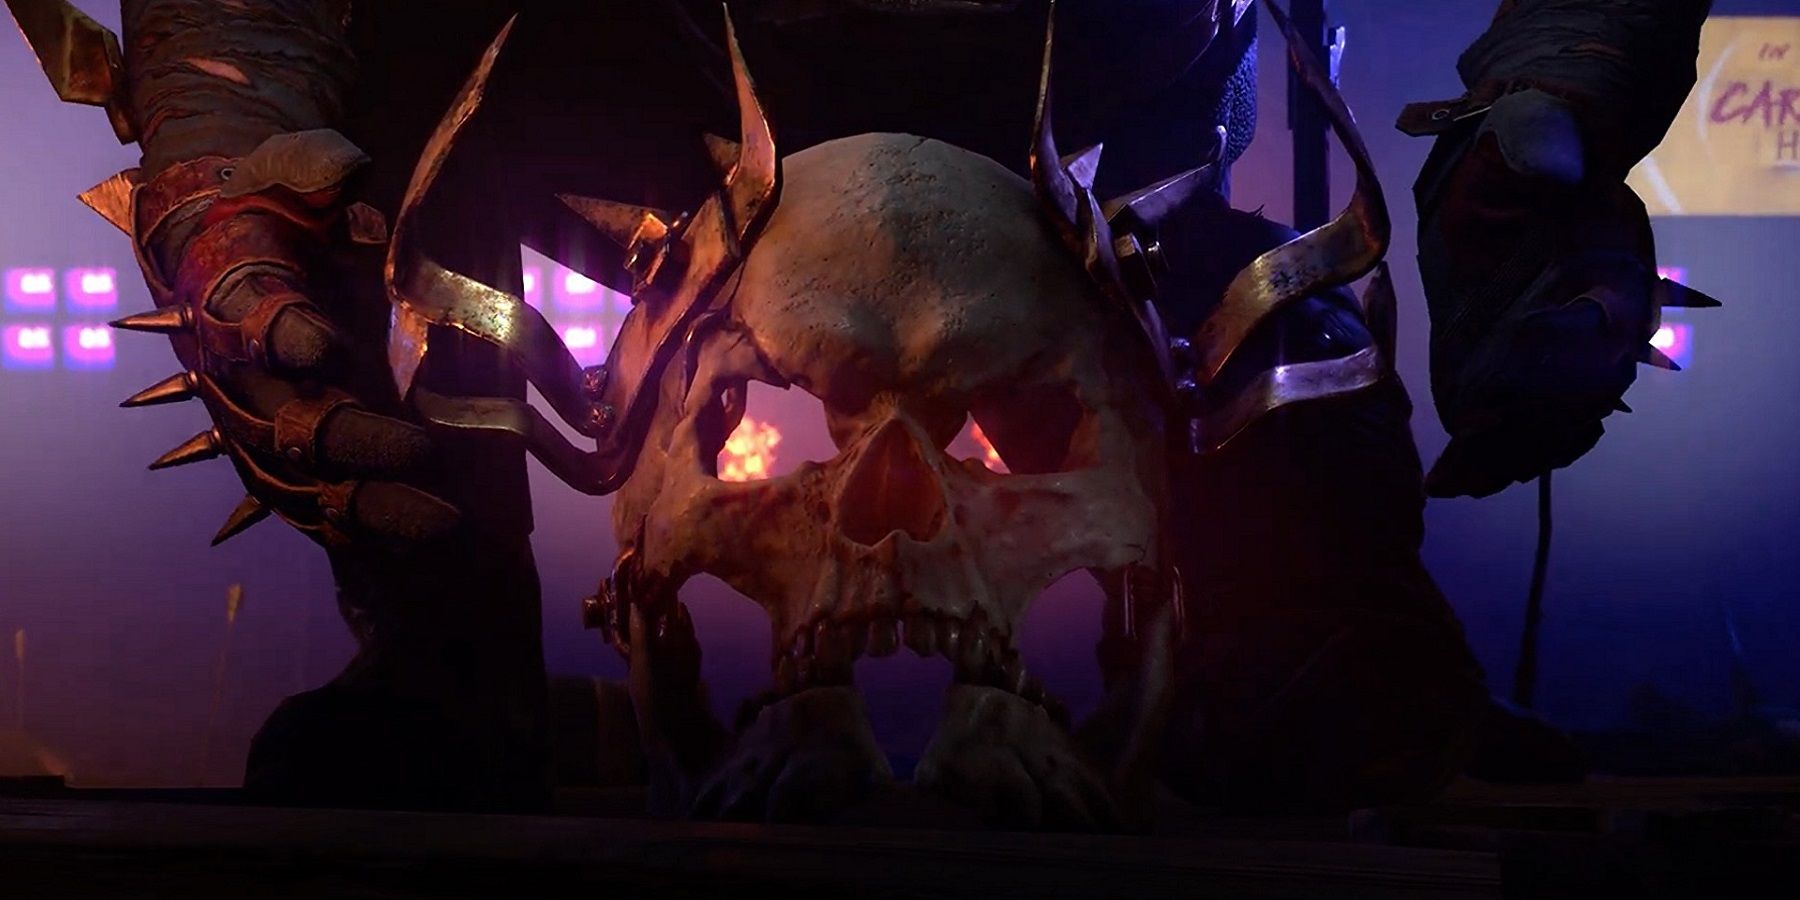 Изображение из DLC Dying Light 2: Bloody Ties, показывающее череп, который вот-вот поднимут с пола.